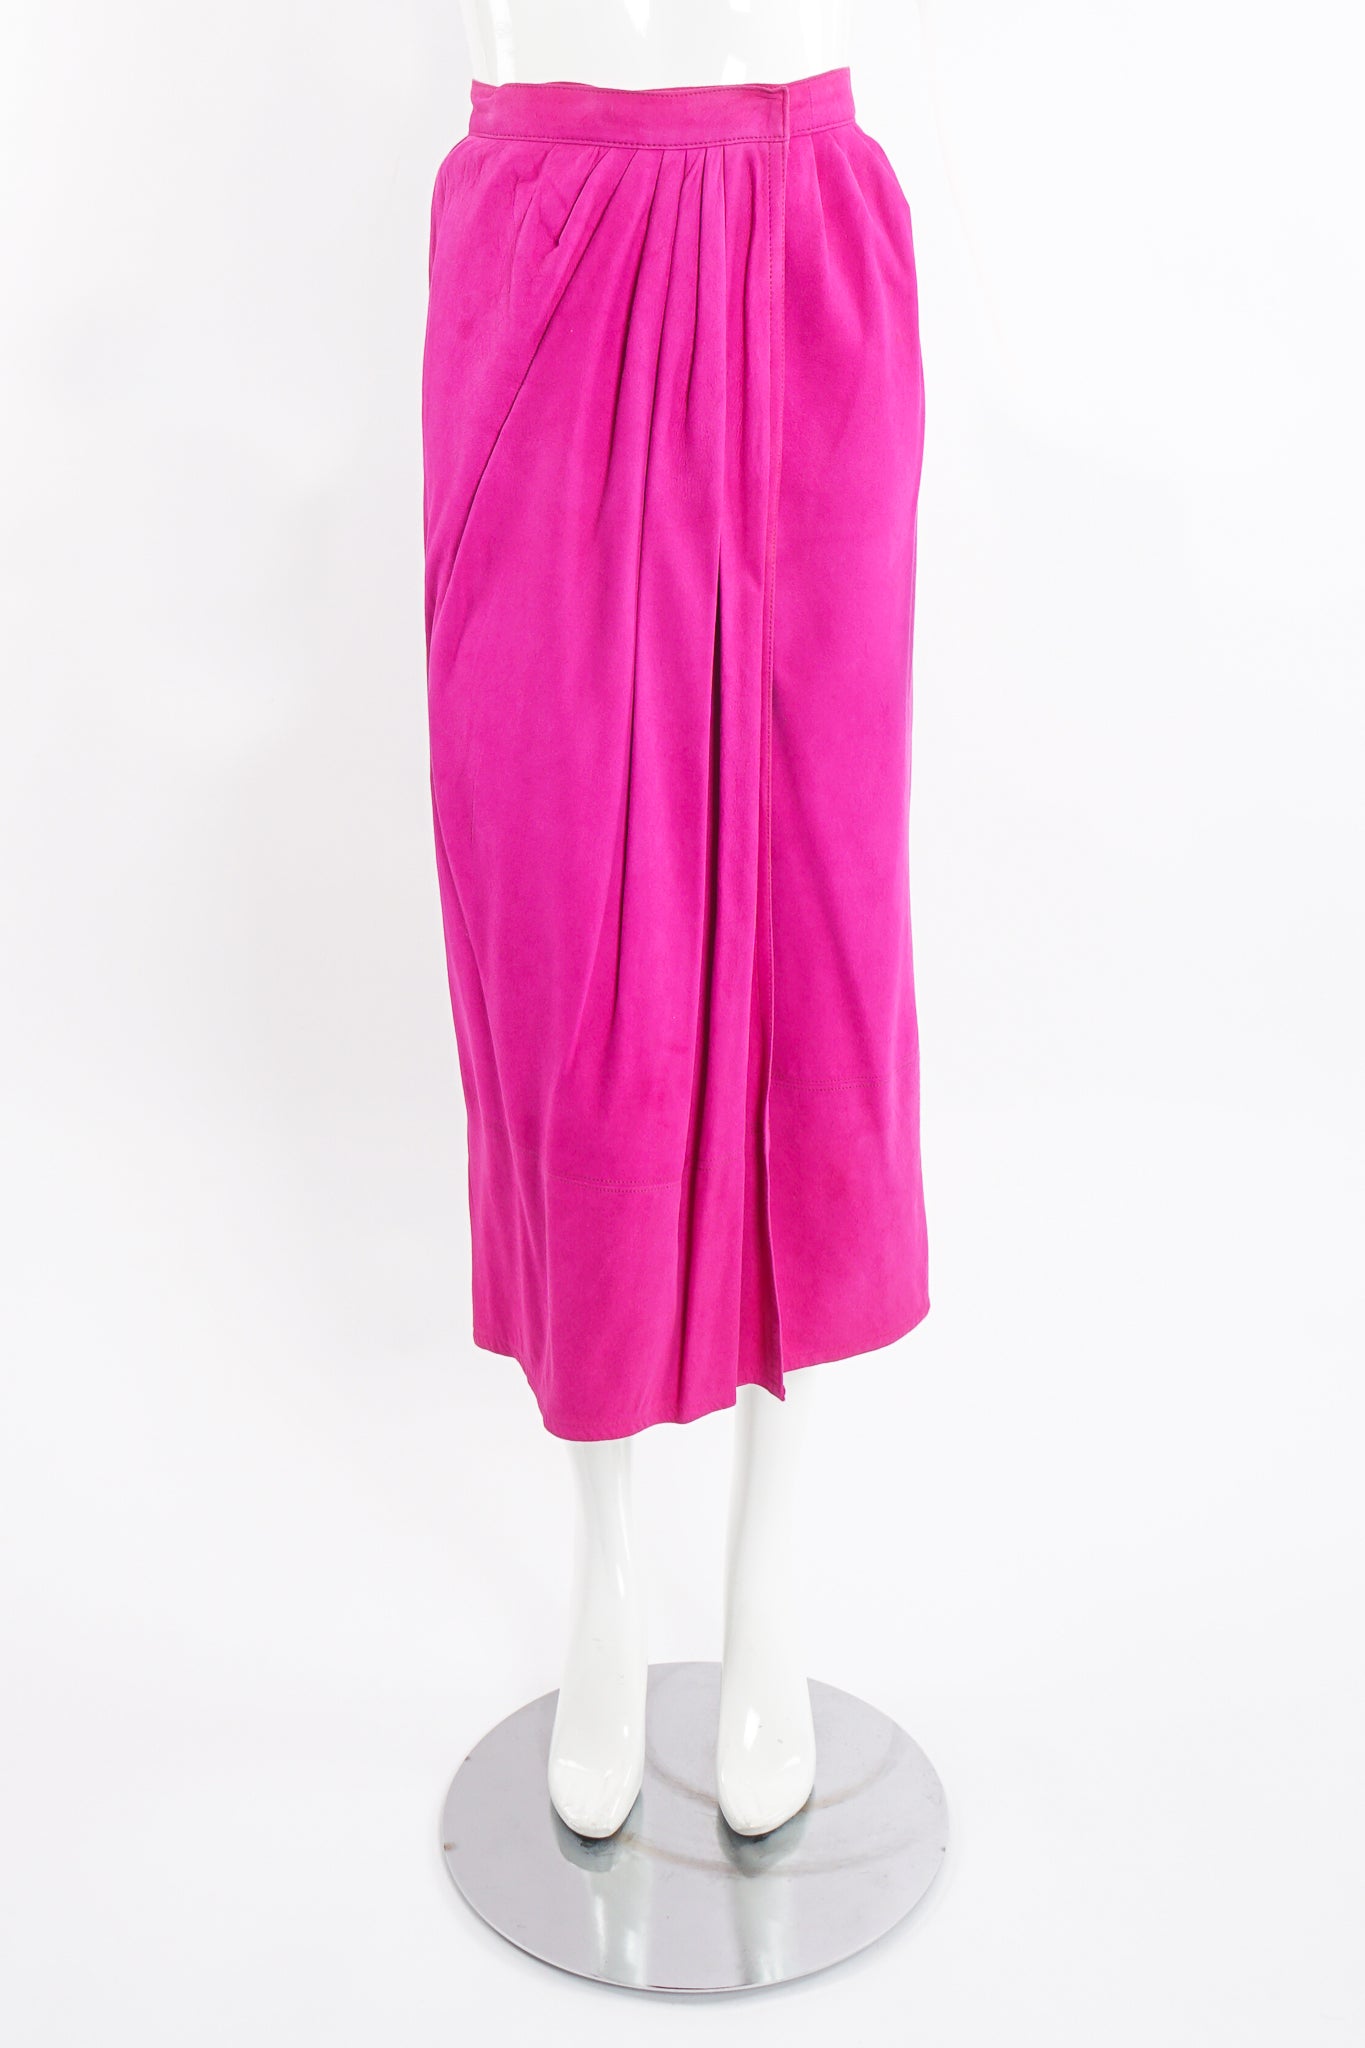 Vintage Kasper for JL Sport Hot Pink Tissue Suede Wrap Skirt on Mannequin front at Recess LA